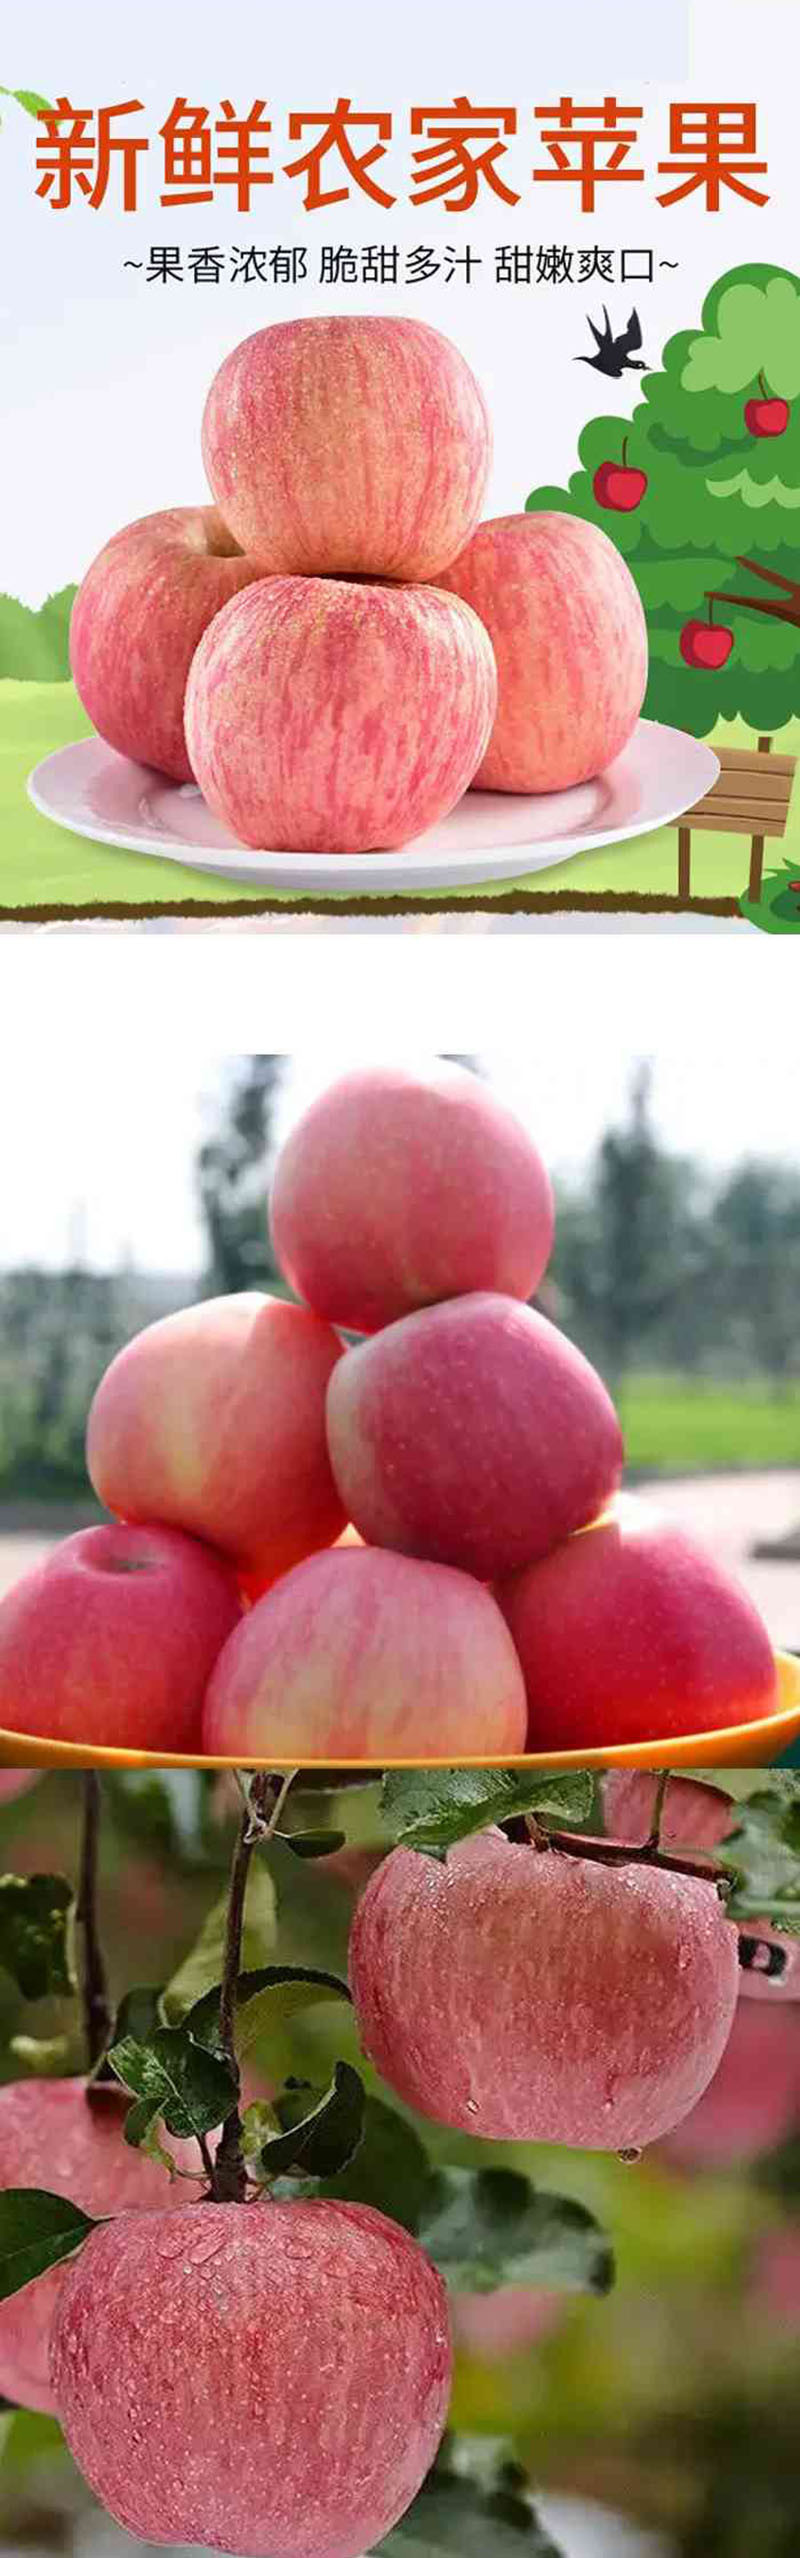  洛阳农品 手绘小镇 特级红富士苹果5kg